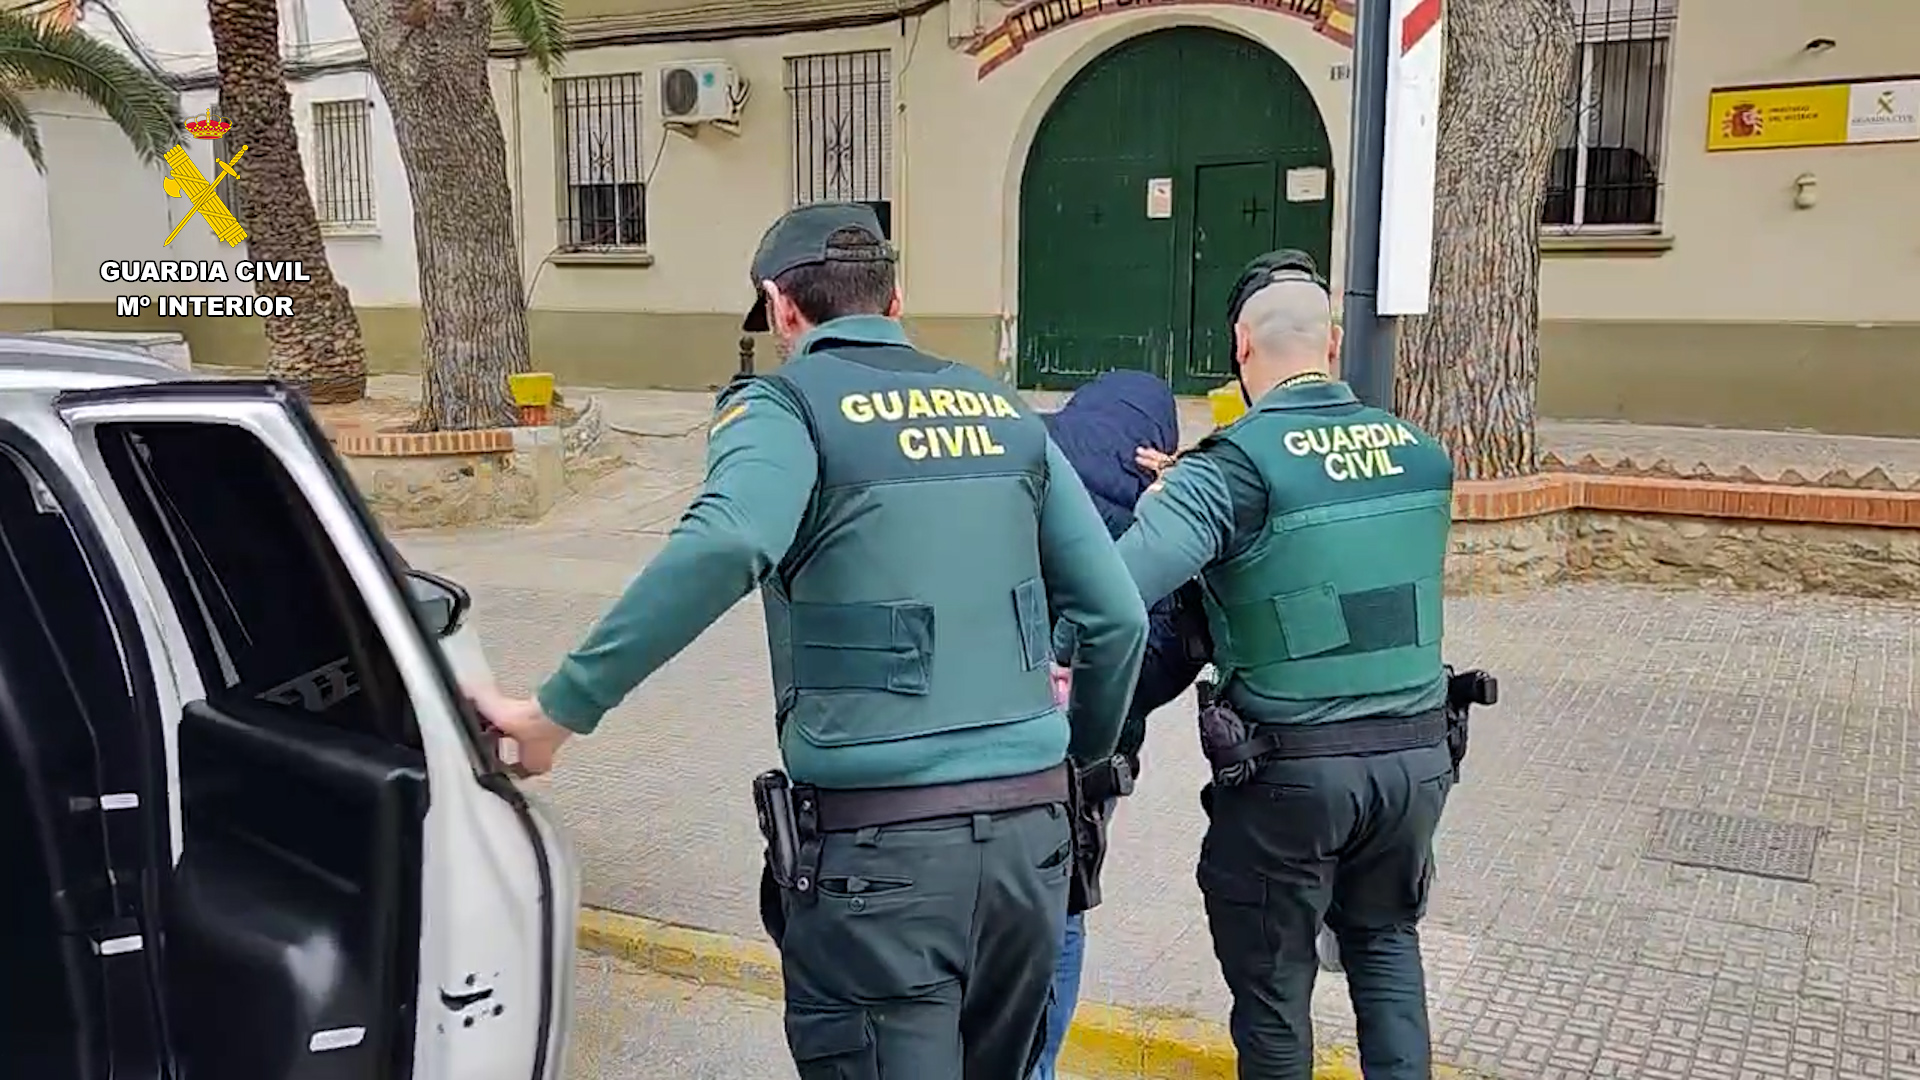 La Guardia Civil detiene a cinco personas especializadas hurtos y estafas a personas mayores en Valencia